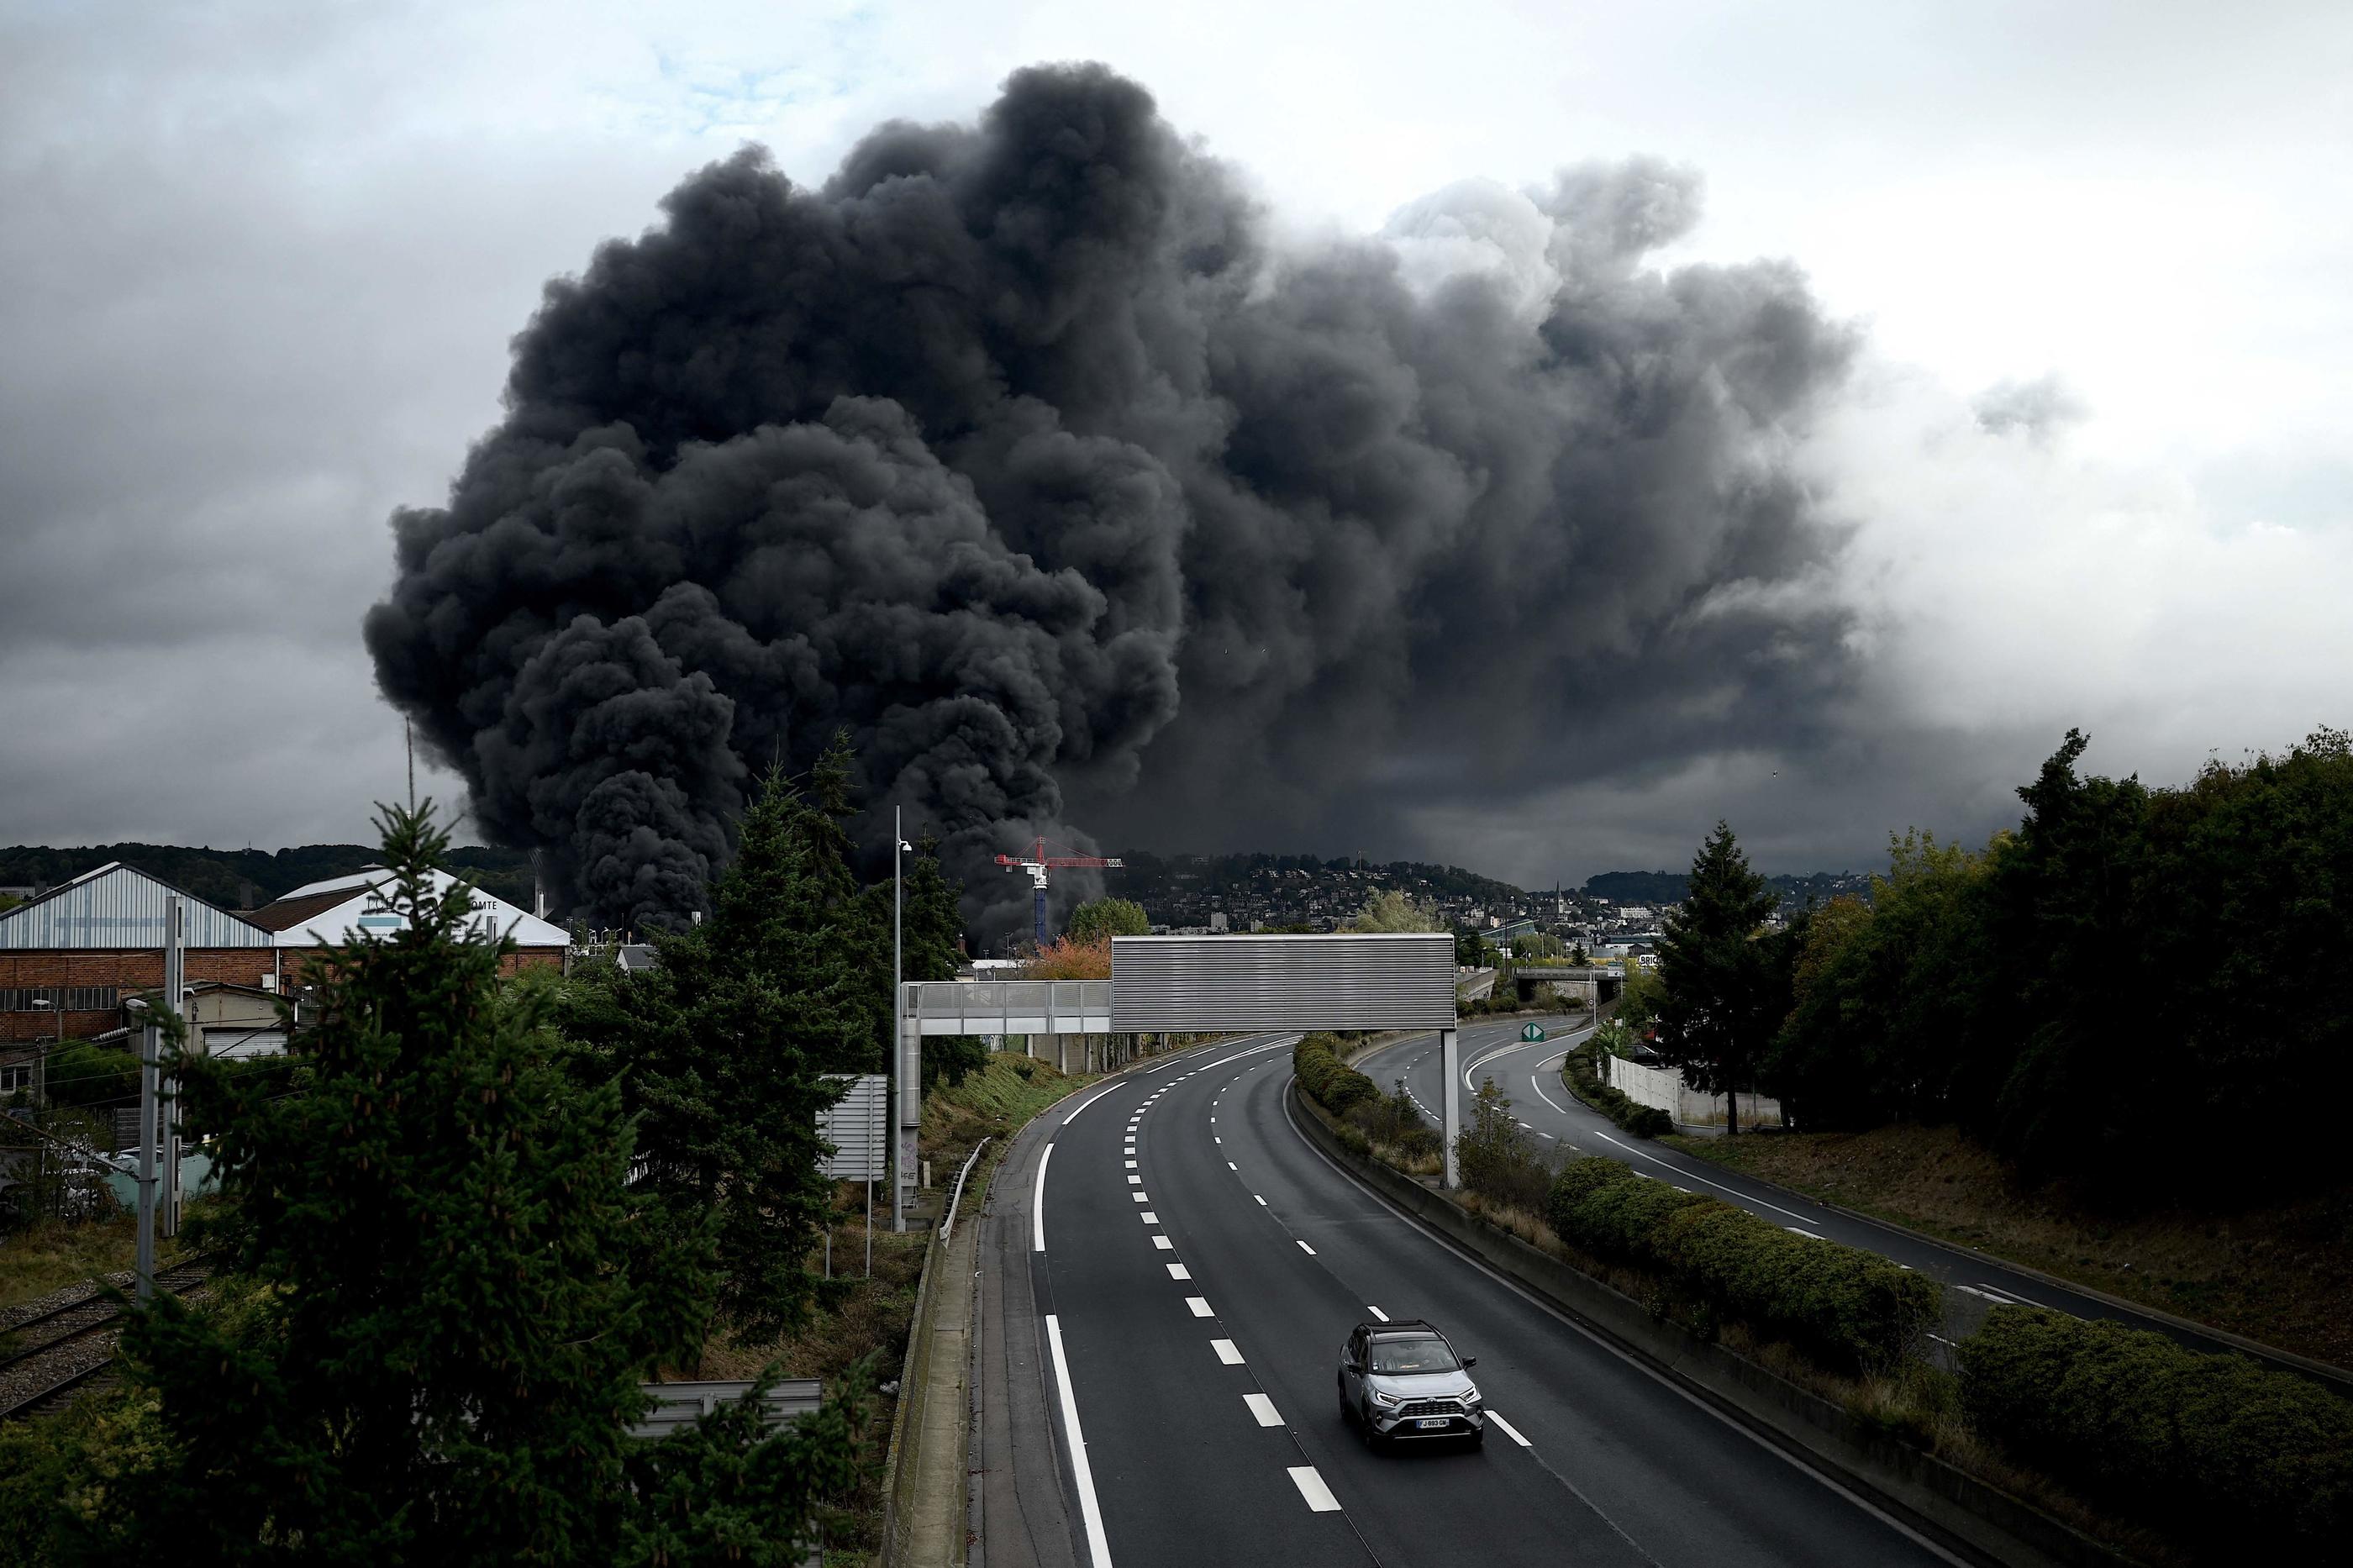 L'alerte pourra être envoyée en cas de catastrophes ou incidents dans une zone précise, comme lors de l'incendie de l'usine Lubrizol. AFP/Philippe Lopez